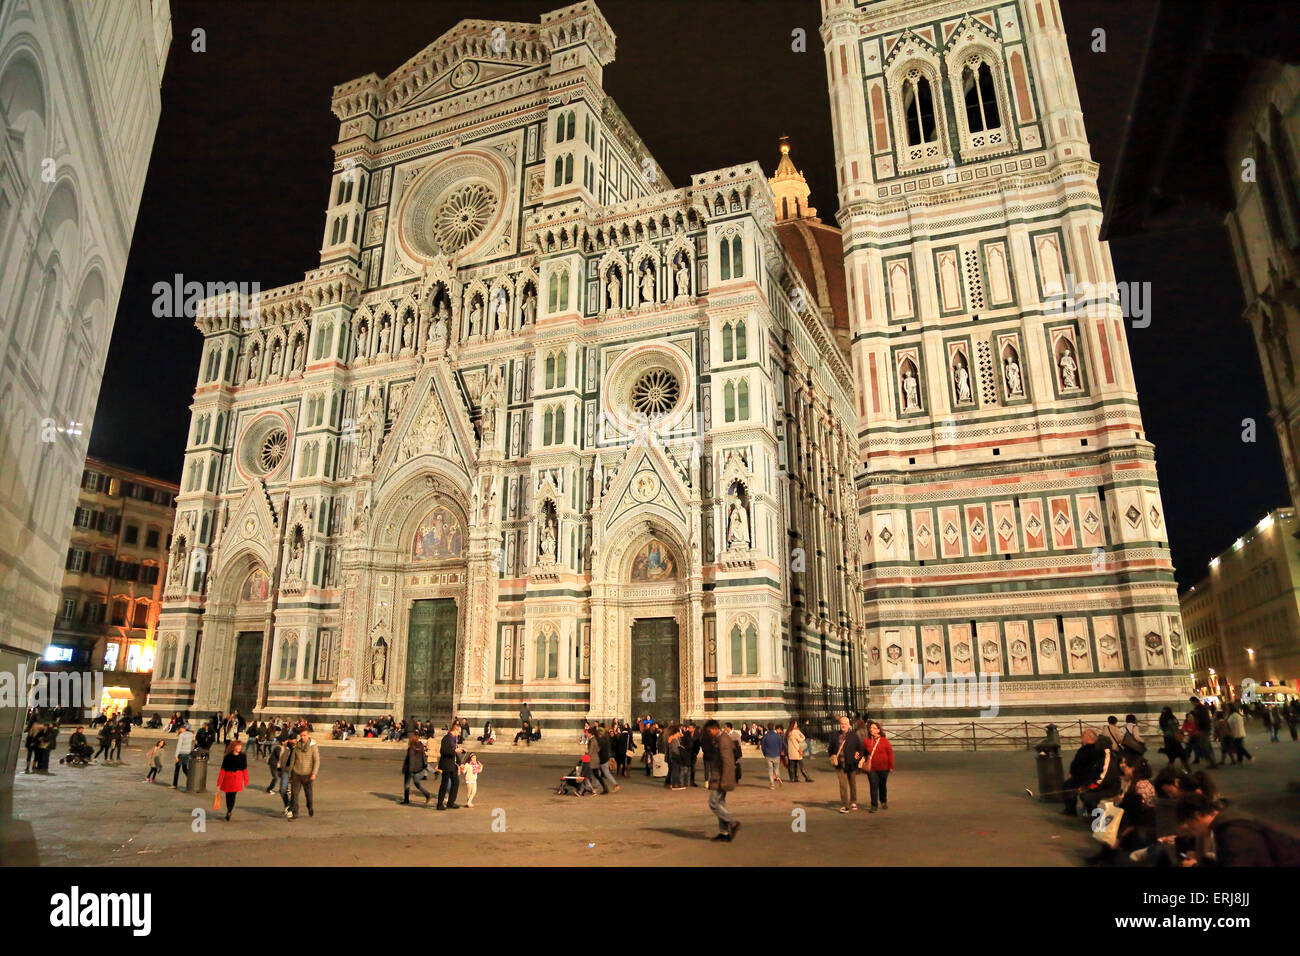 Duomo di Firenze, Cathedral of Santa Maria del Fiore, Florence Stock Photo